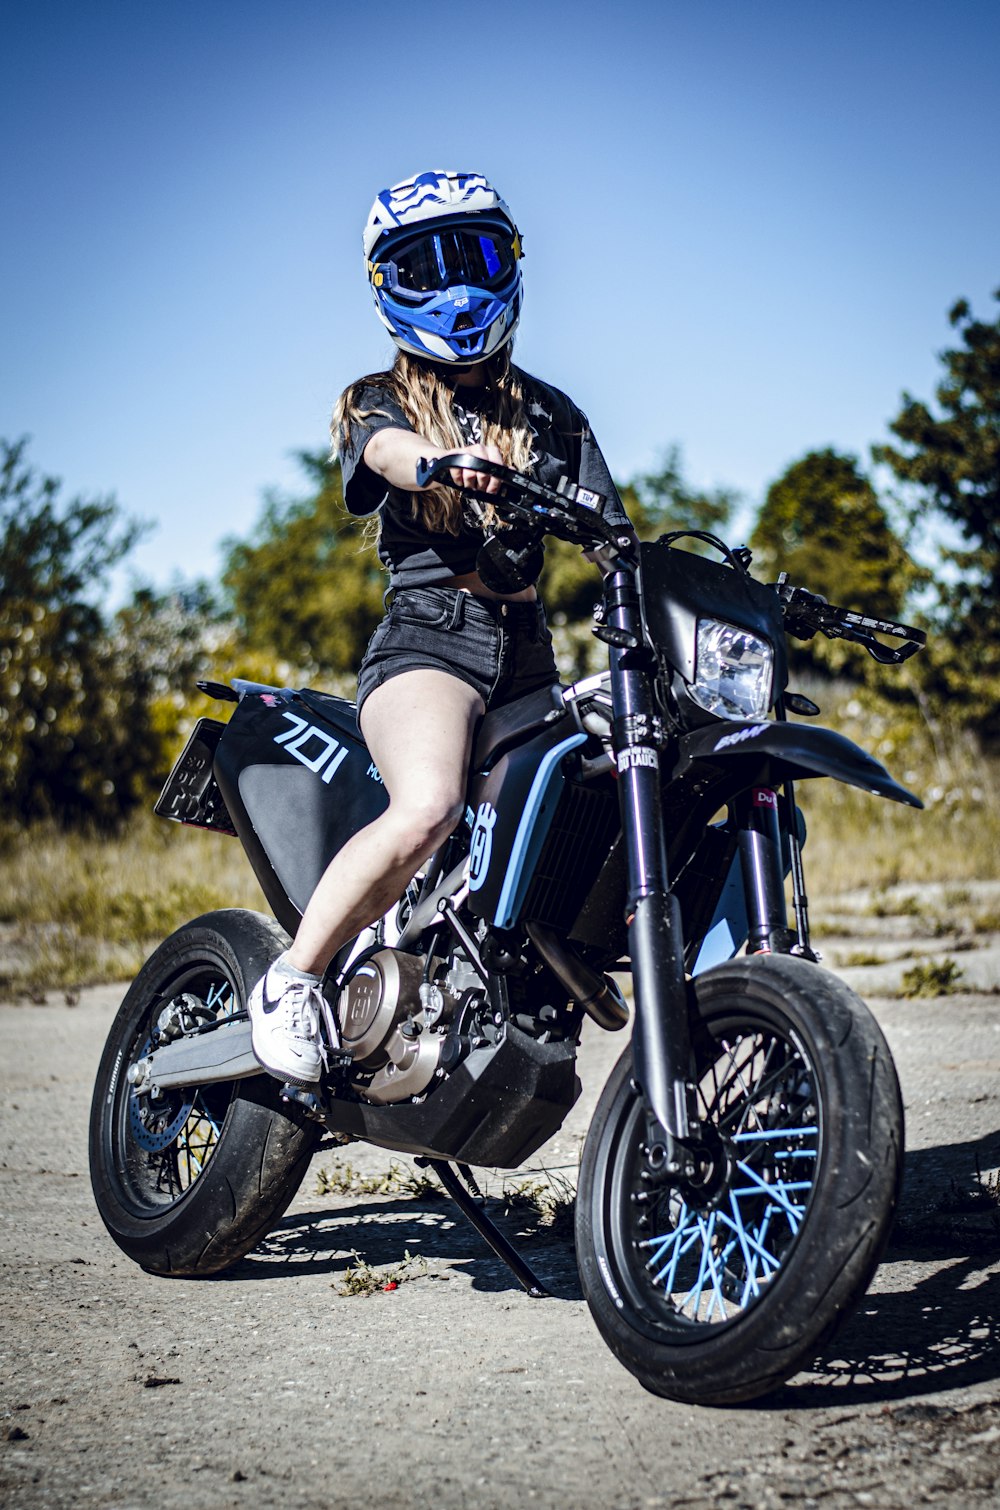 Hombre con casco azul montando motocicleta negra